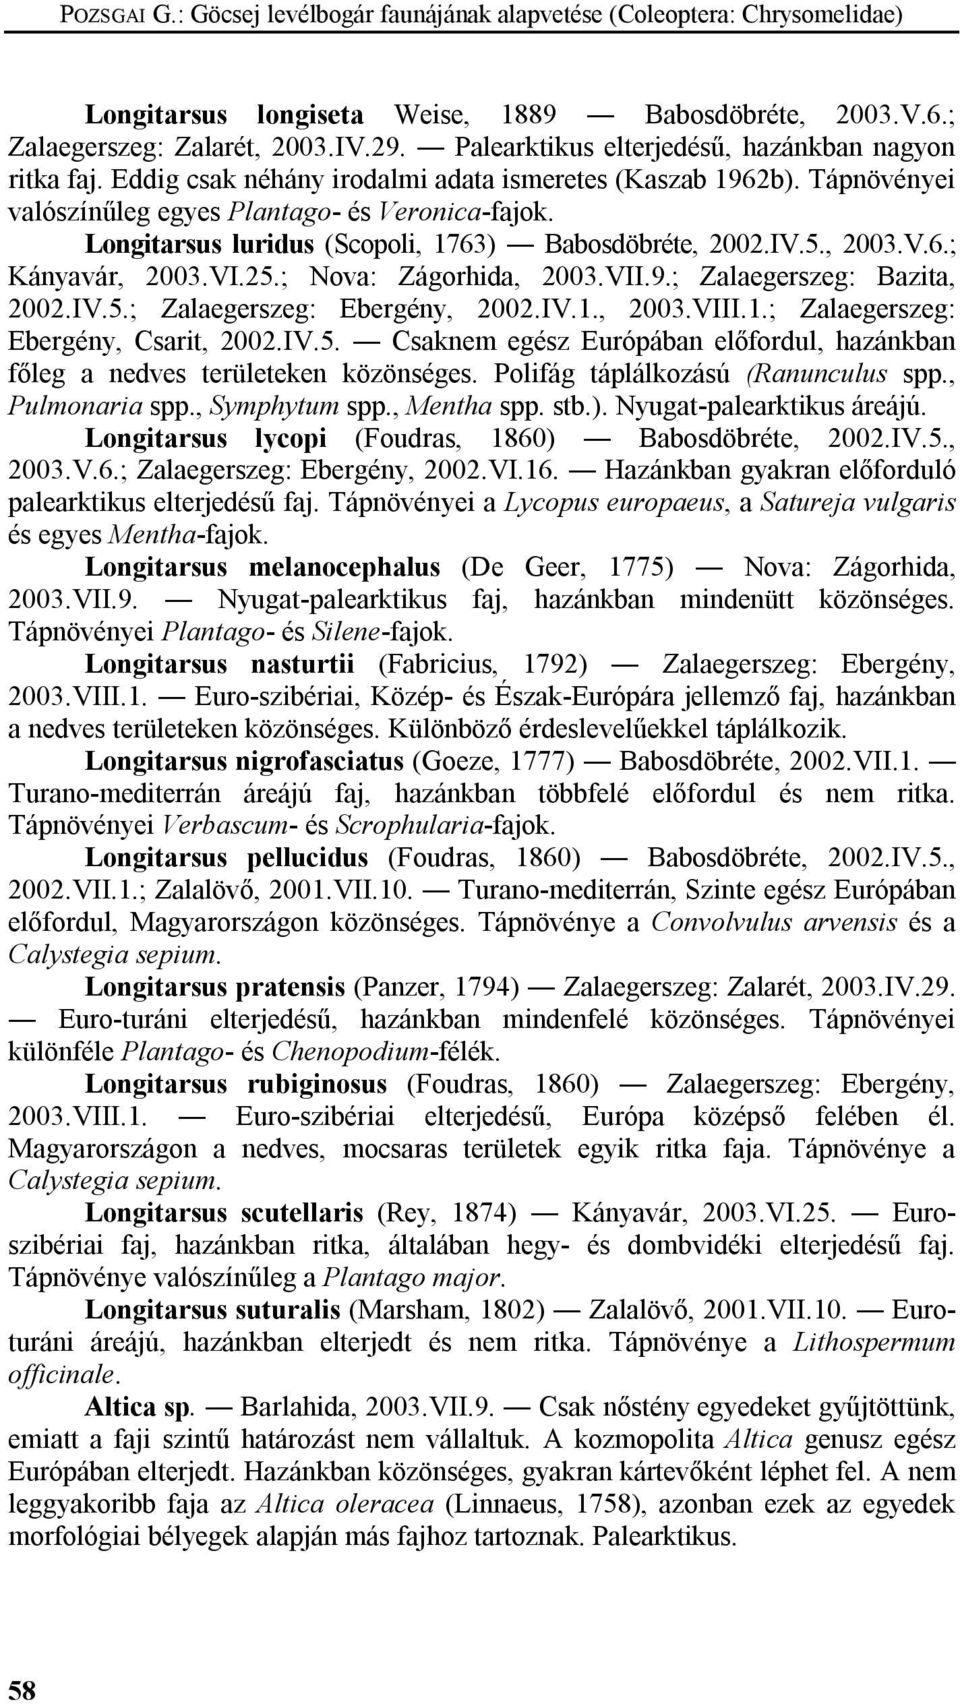 Longitarsus luridus (Scopoli, 1763) Babosdöbréte, 2002.IV.5., 2003.V.6.; Kányavár, 2003.VI.25.; Nova: Zágorhida, 2003.VII.9.; Zalaegerszeg: Bazita, 2002.IV.5.; Zalaegerszeg: Ebergény, 2002.IV.1., 2003.VIII.